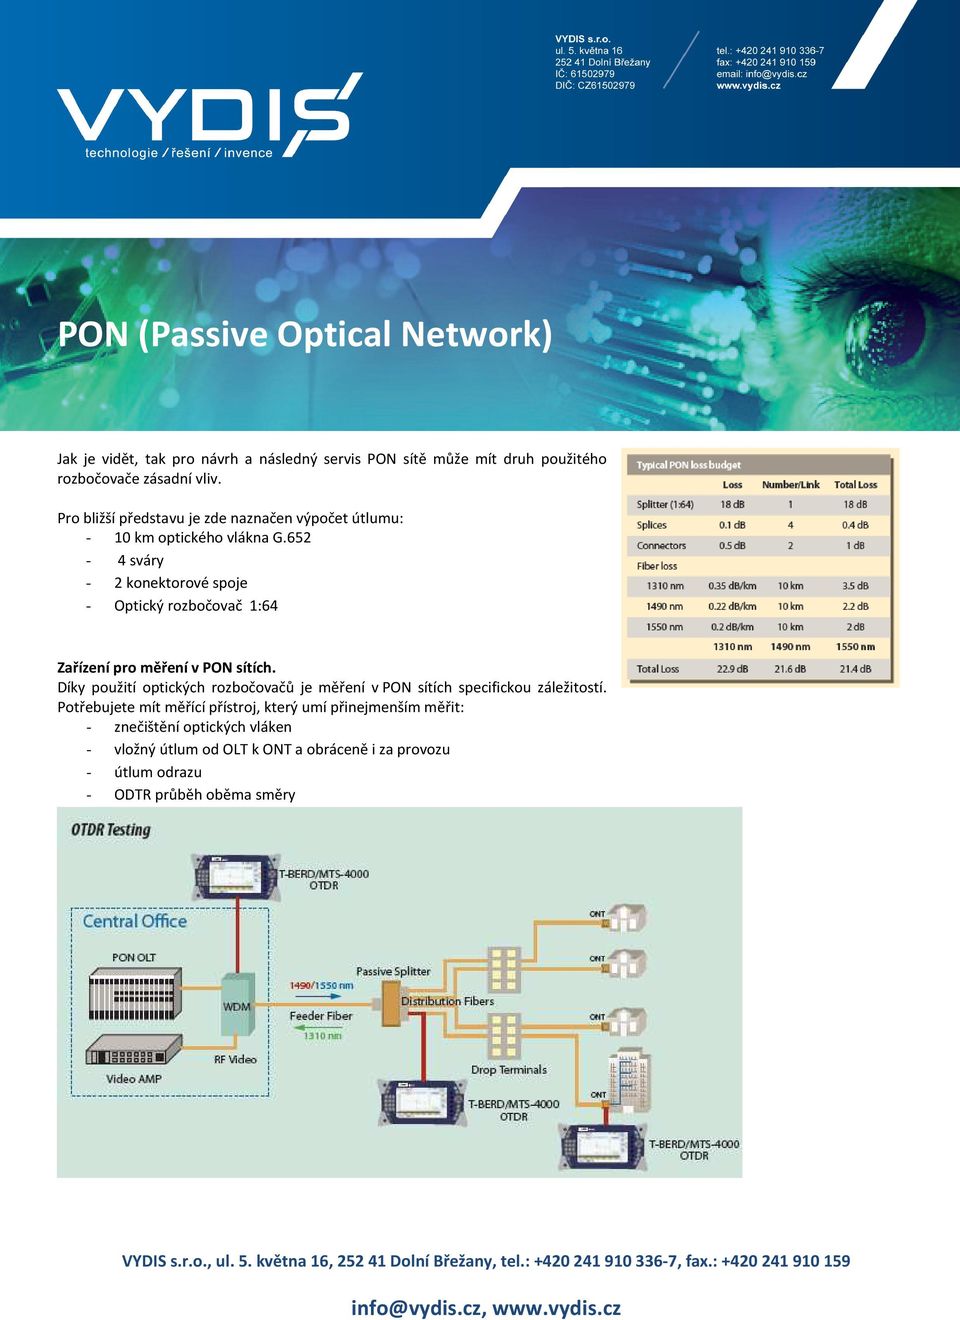 652-4 sváry - 2 konektorové spoje - Optický rozbočovač 1:64 Zařízení pro měření v PON sítích.